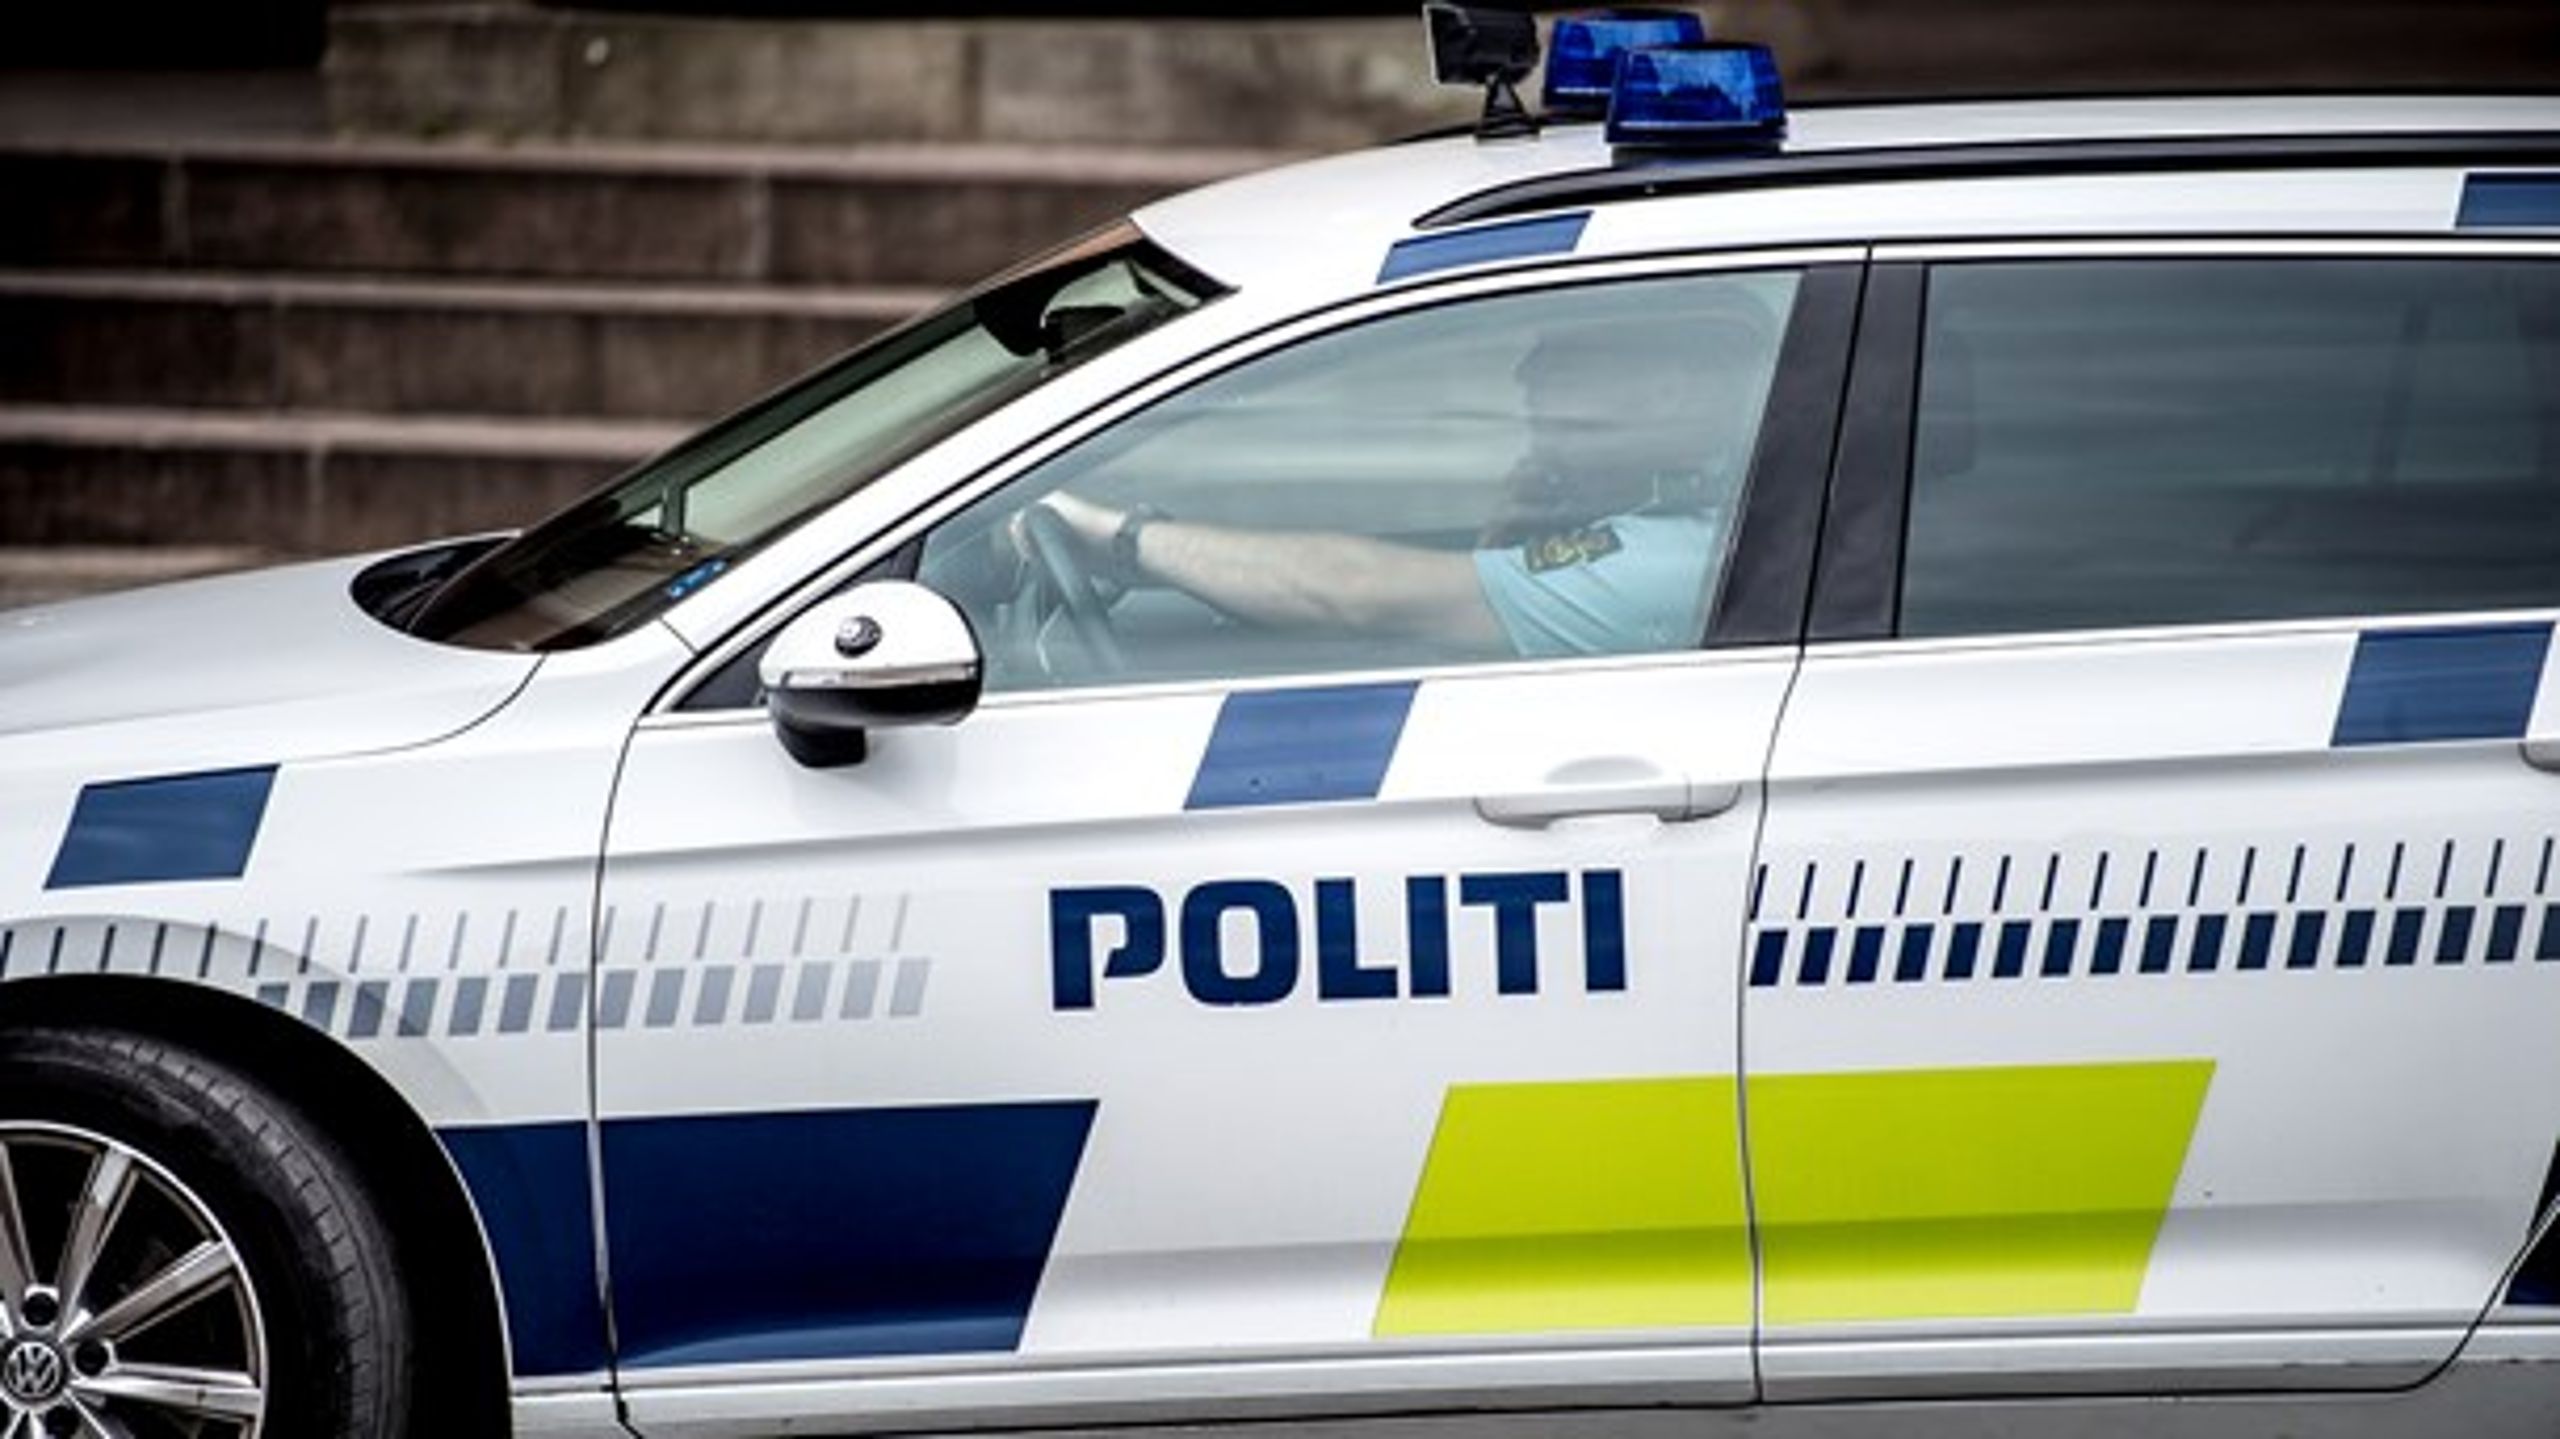 Tilliden til&nbsp;politiet er normalt høj, men en stor af danskerne har mistet troen på, at politiet rent faktisk vil rykke ud, når der er behov for det.&nbsp;<br>